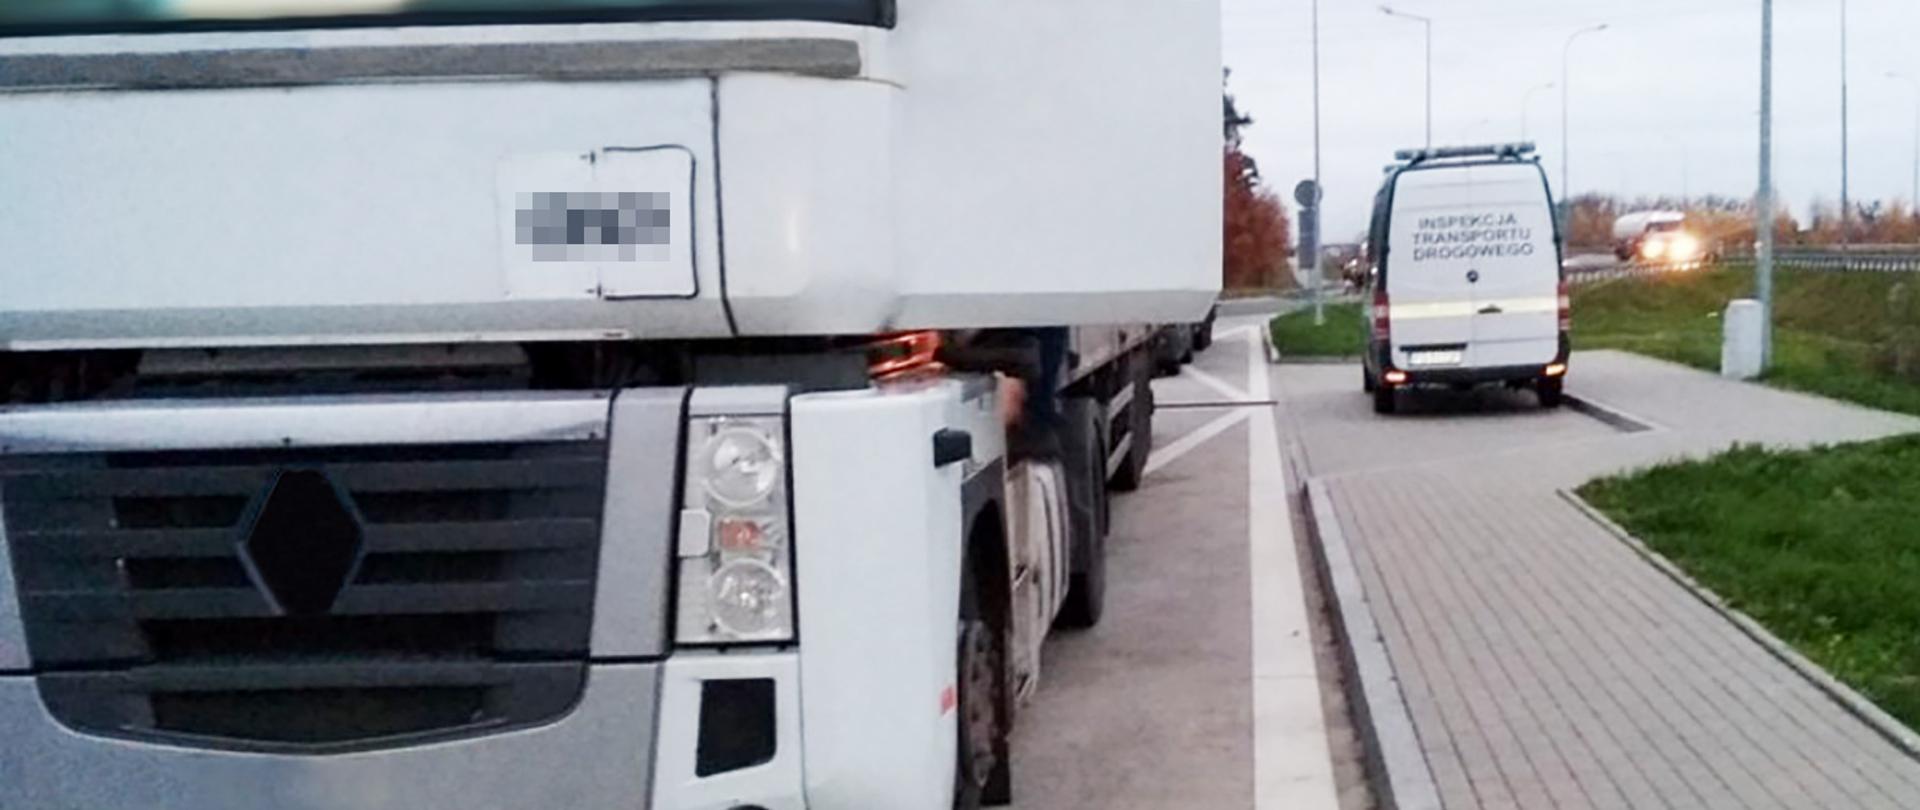 Ciężarówka zatrzymana do kontroli przez gorzowskich inspektorów lubuskiej Inspekcji Transportu Drogowego
